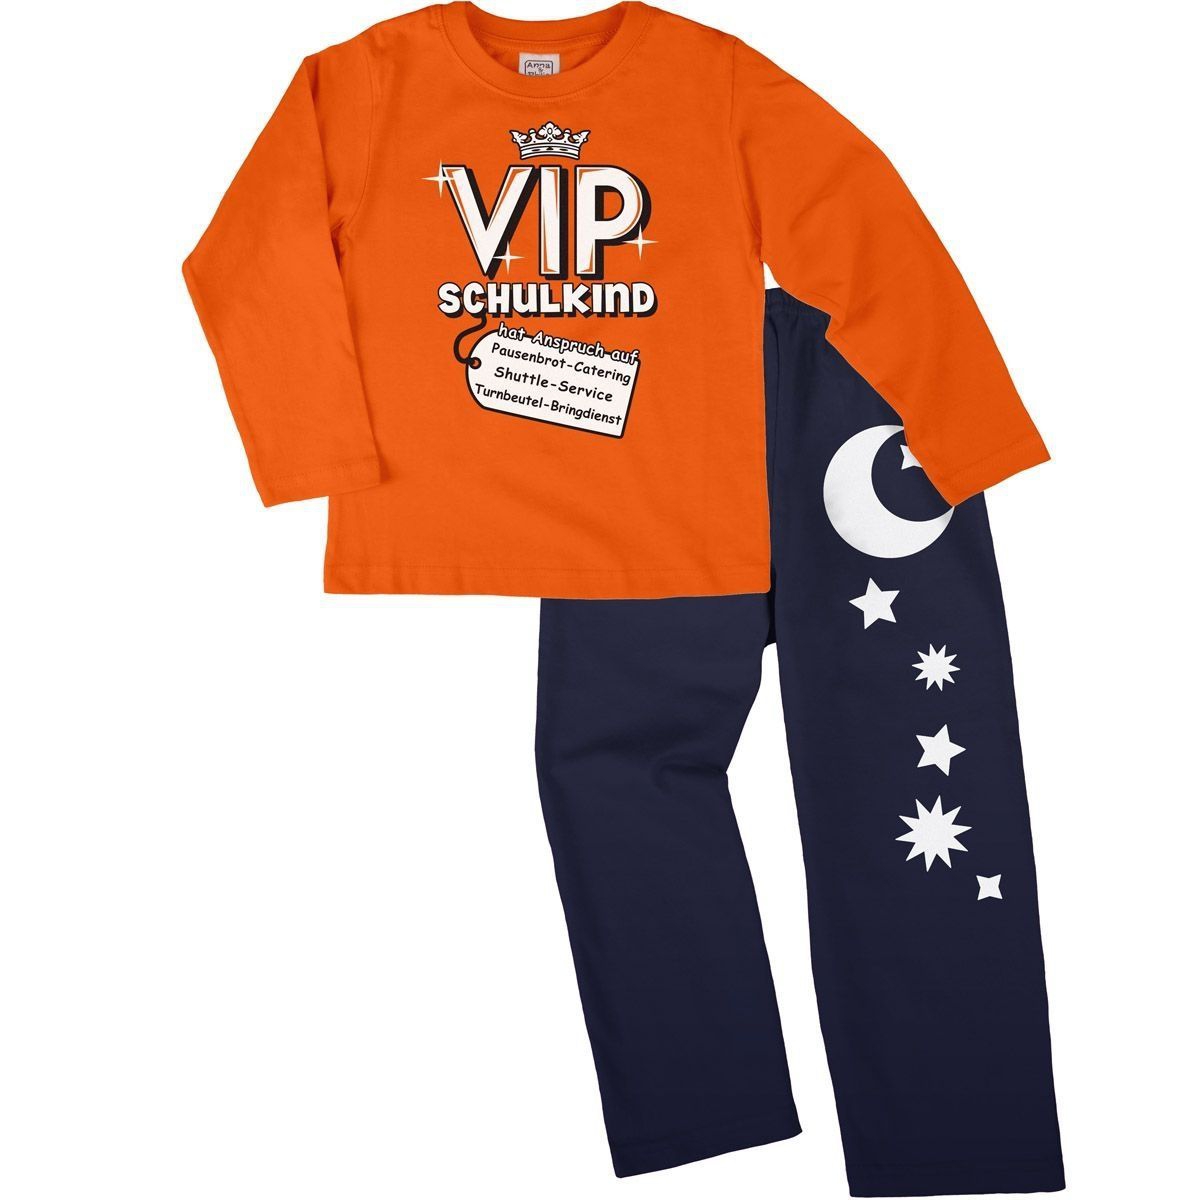 VIP Schulkind Pyjama Set orange / navy 122 / 128